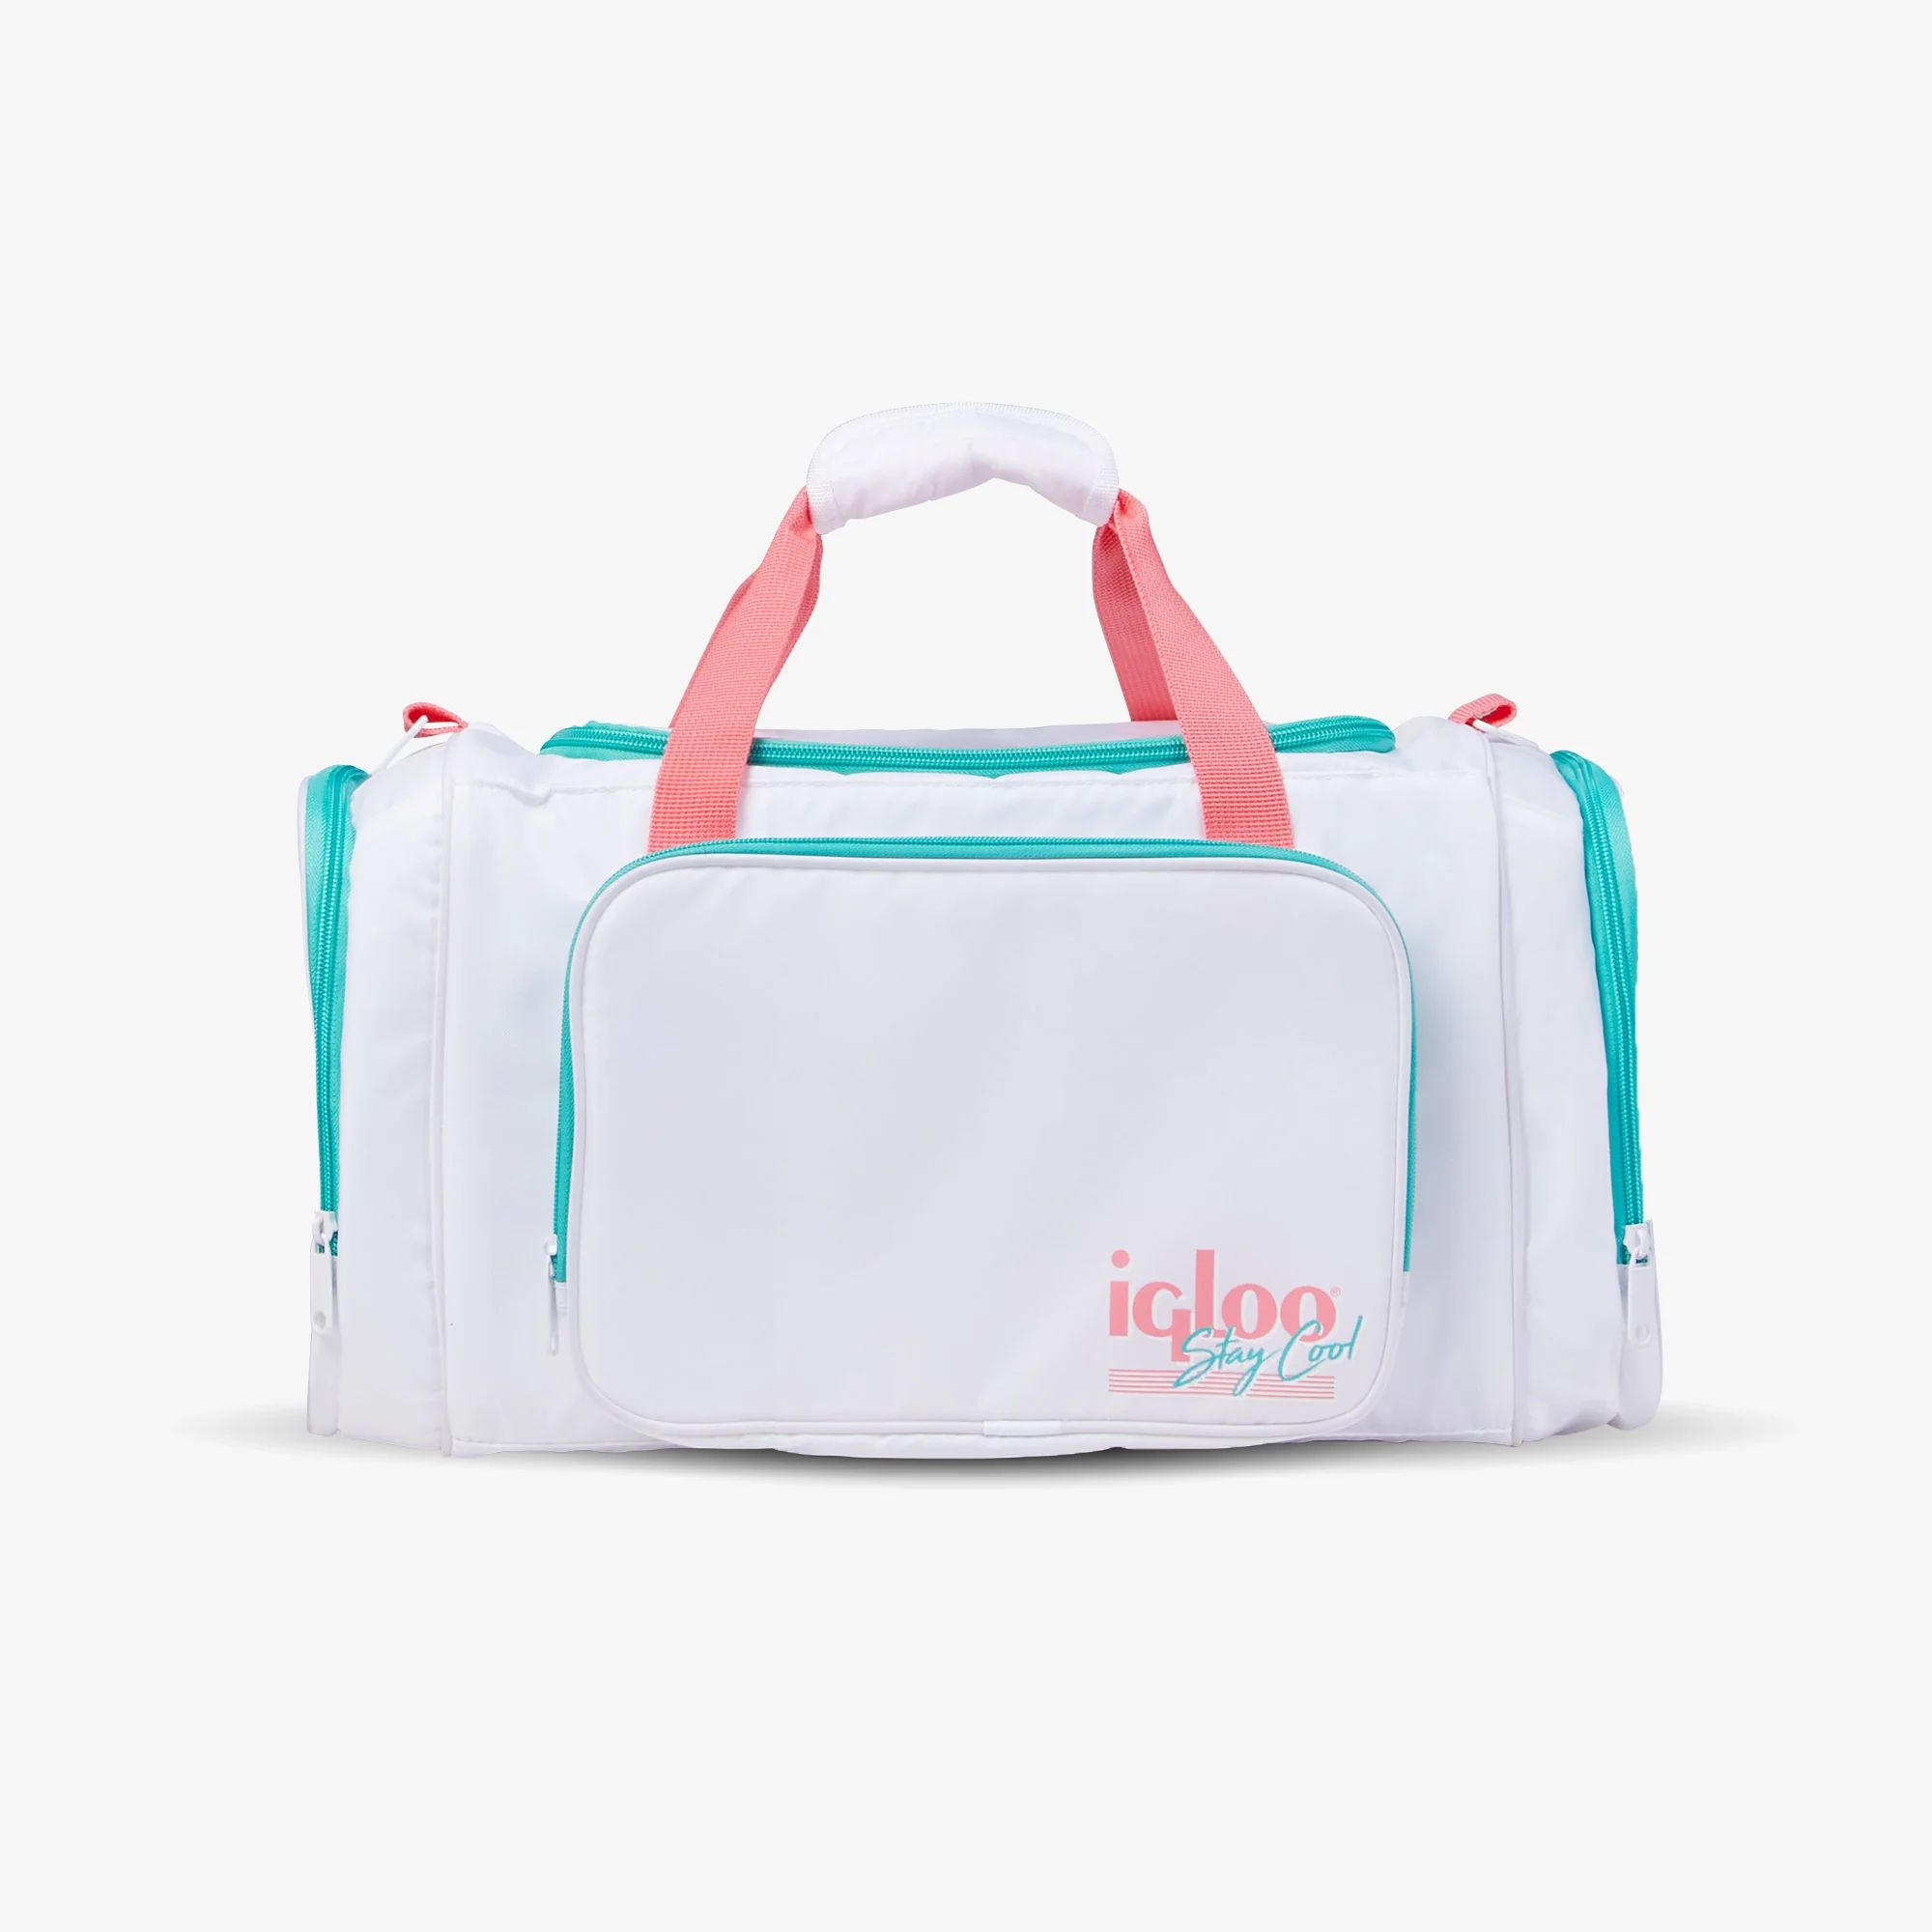 Retro Duffel Bag Cooler | Igloo Coolers